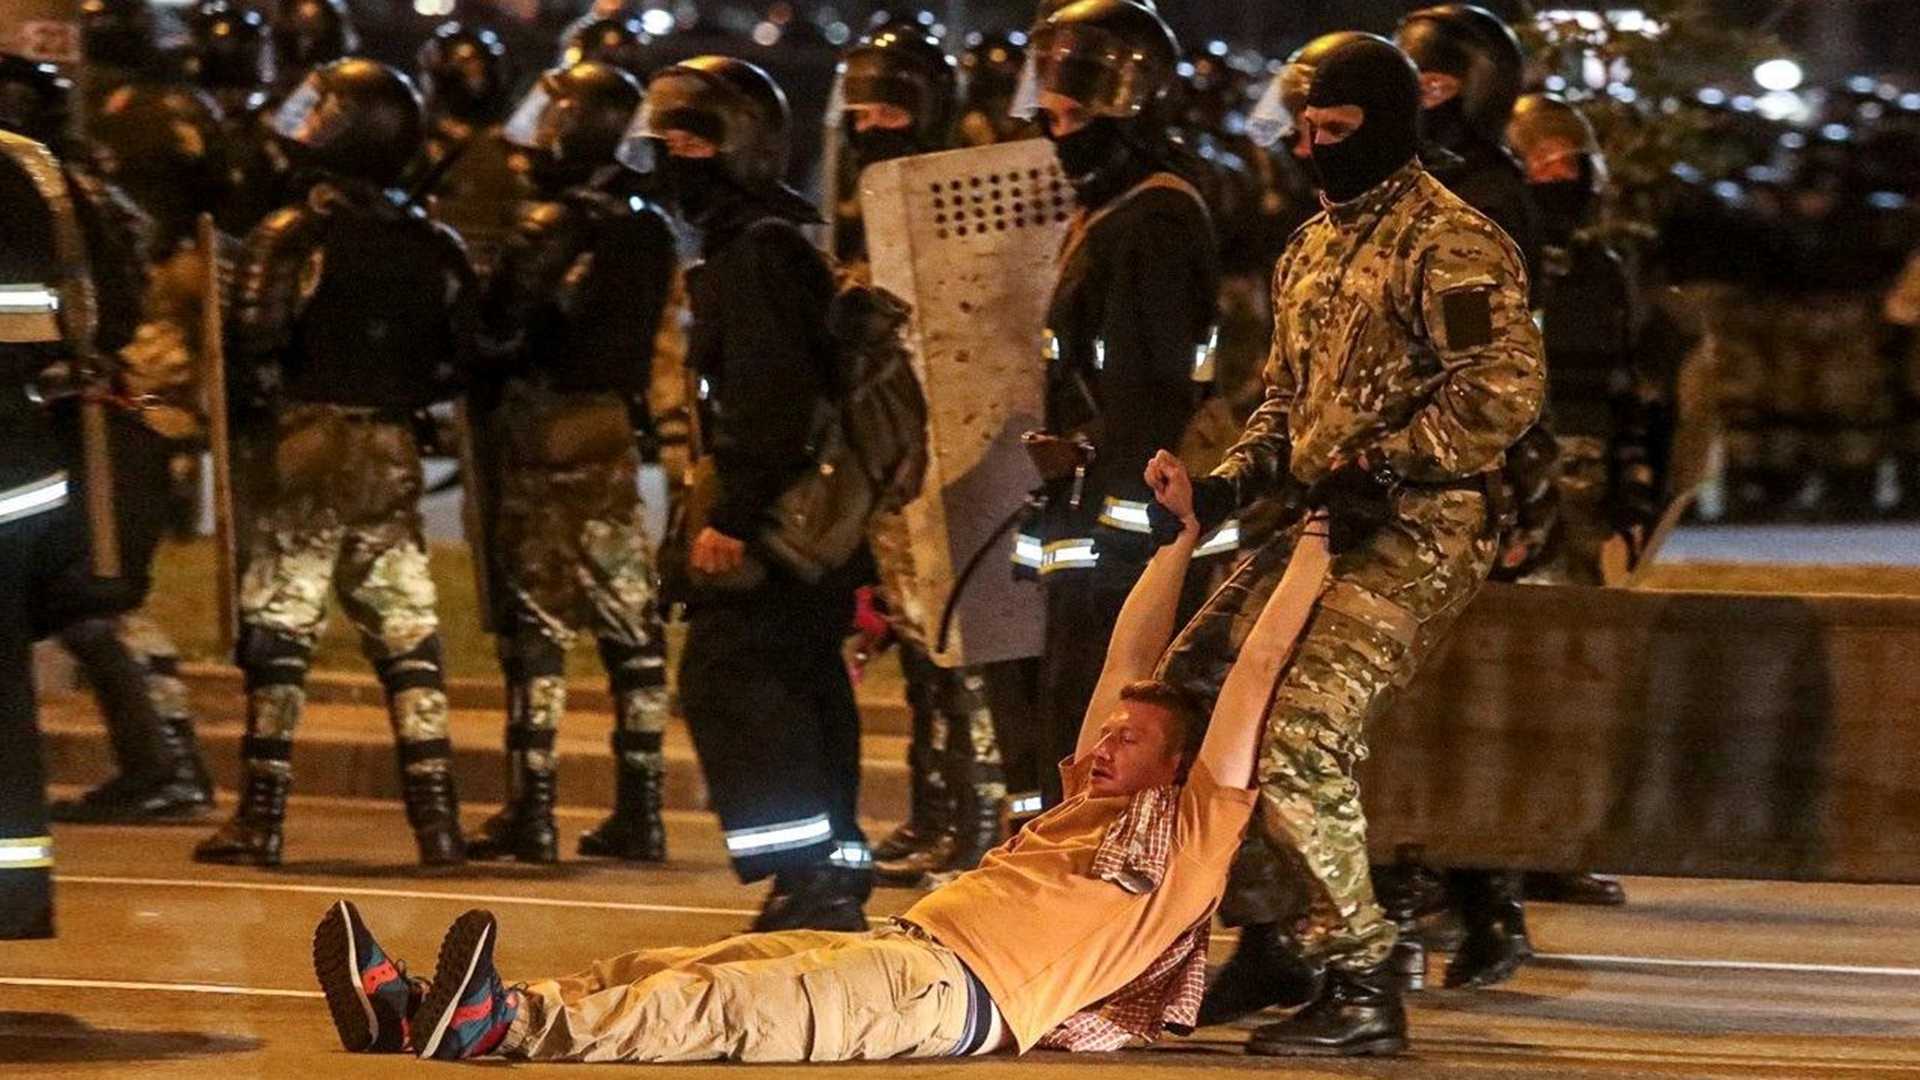 Un hombre es arrastrado durante las protestas (Dmitry Brushko/Tut.By via REUTERS)